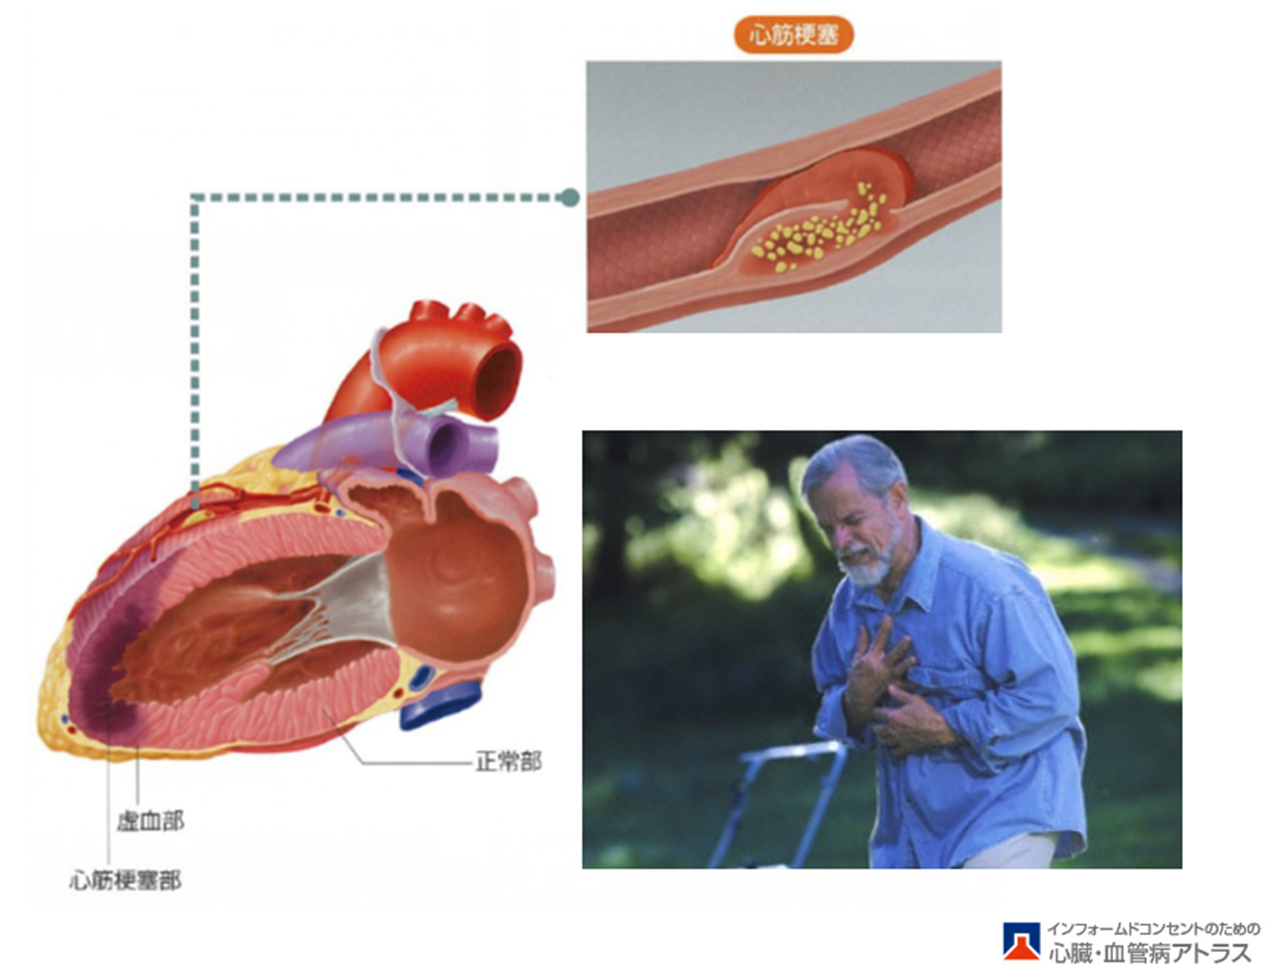 虚血性心疾患の話 – 佐賀大学医学部循環器内科